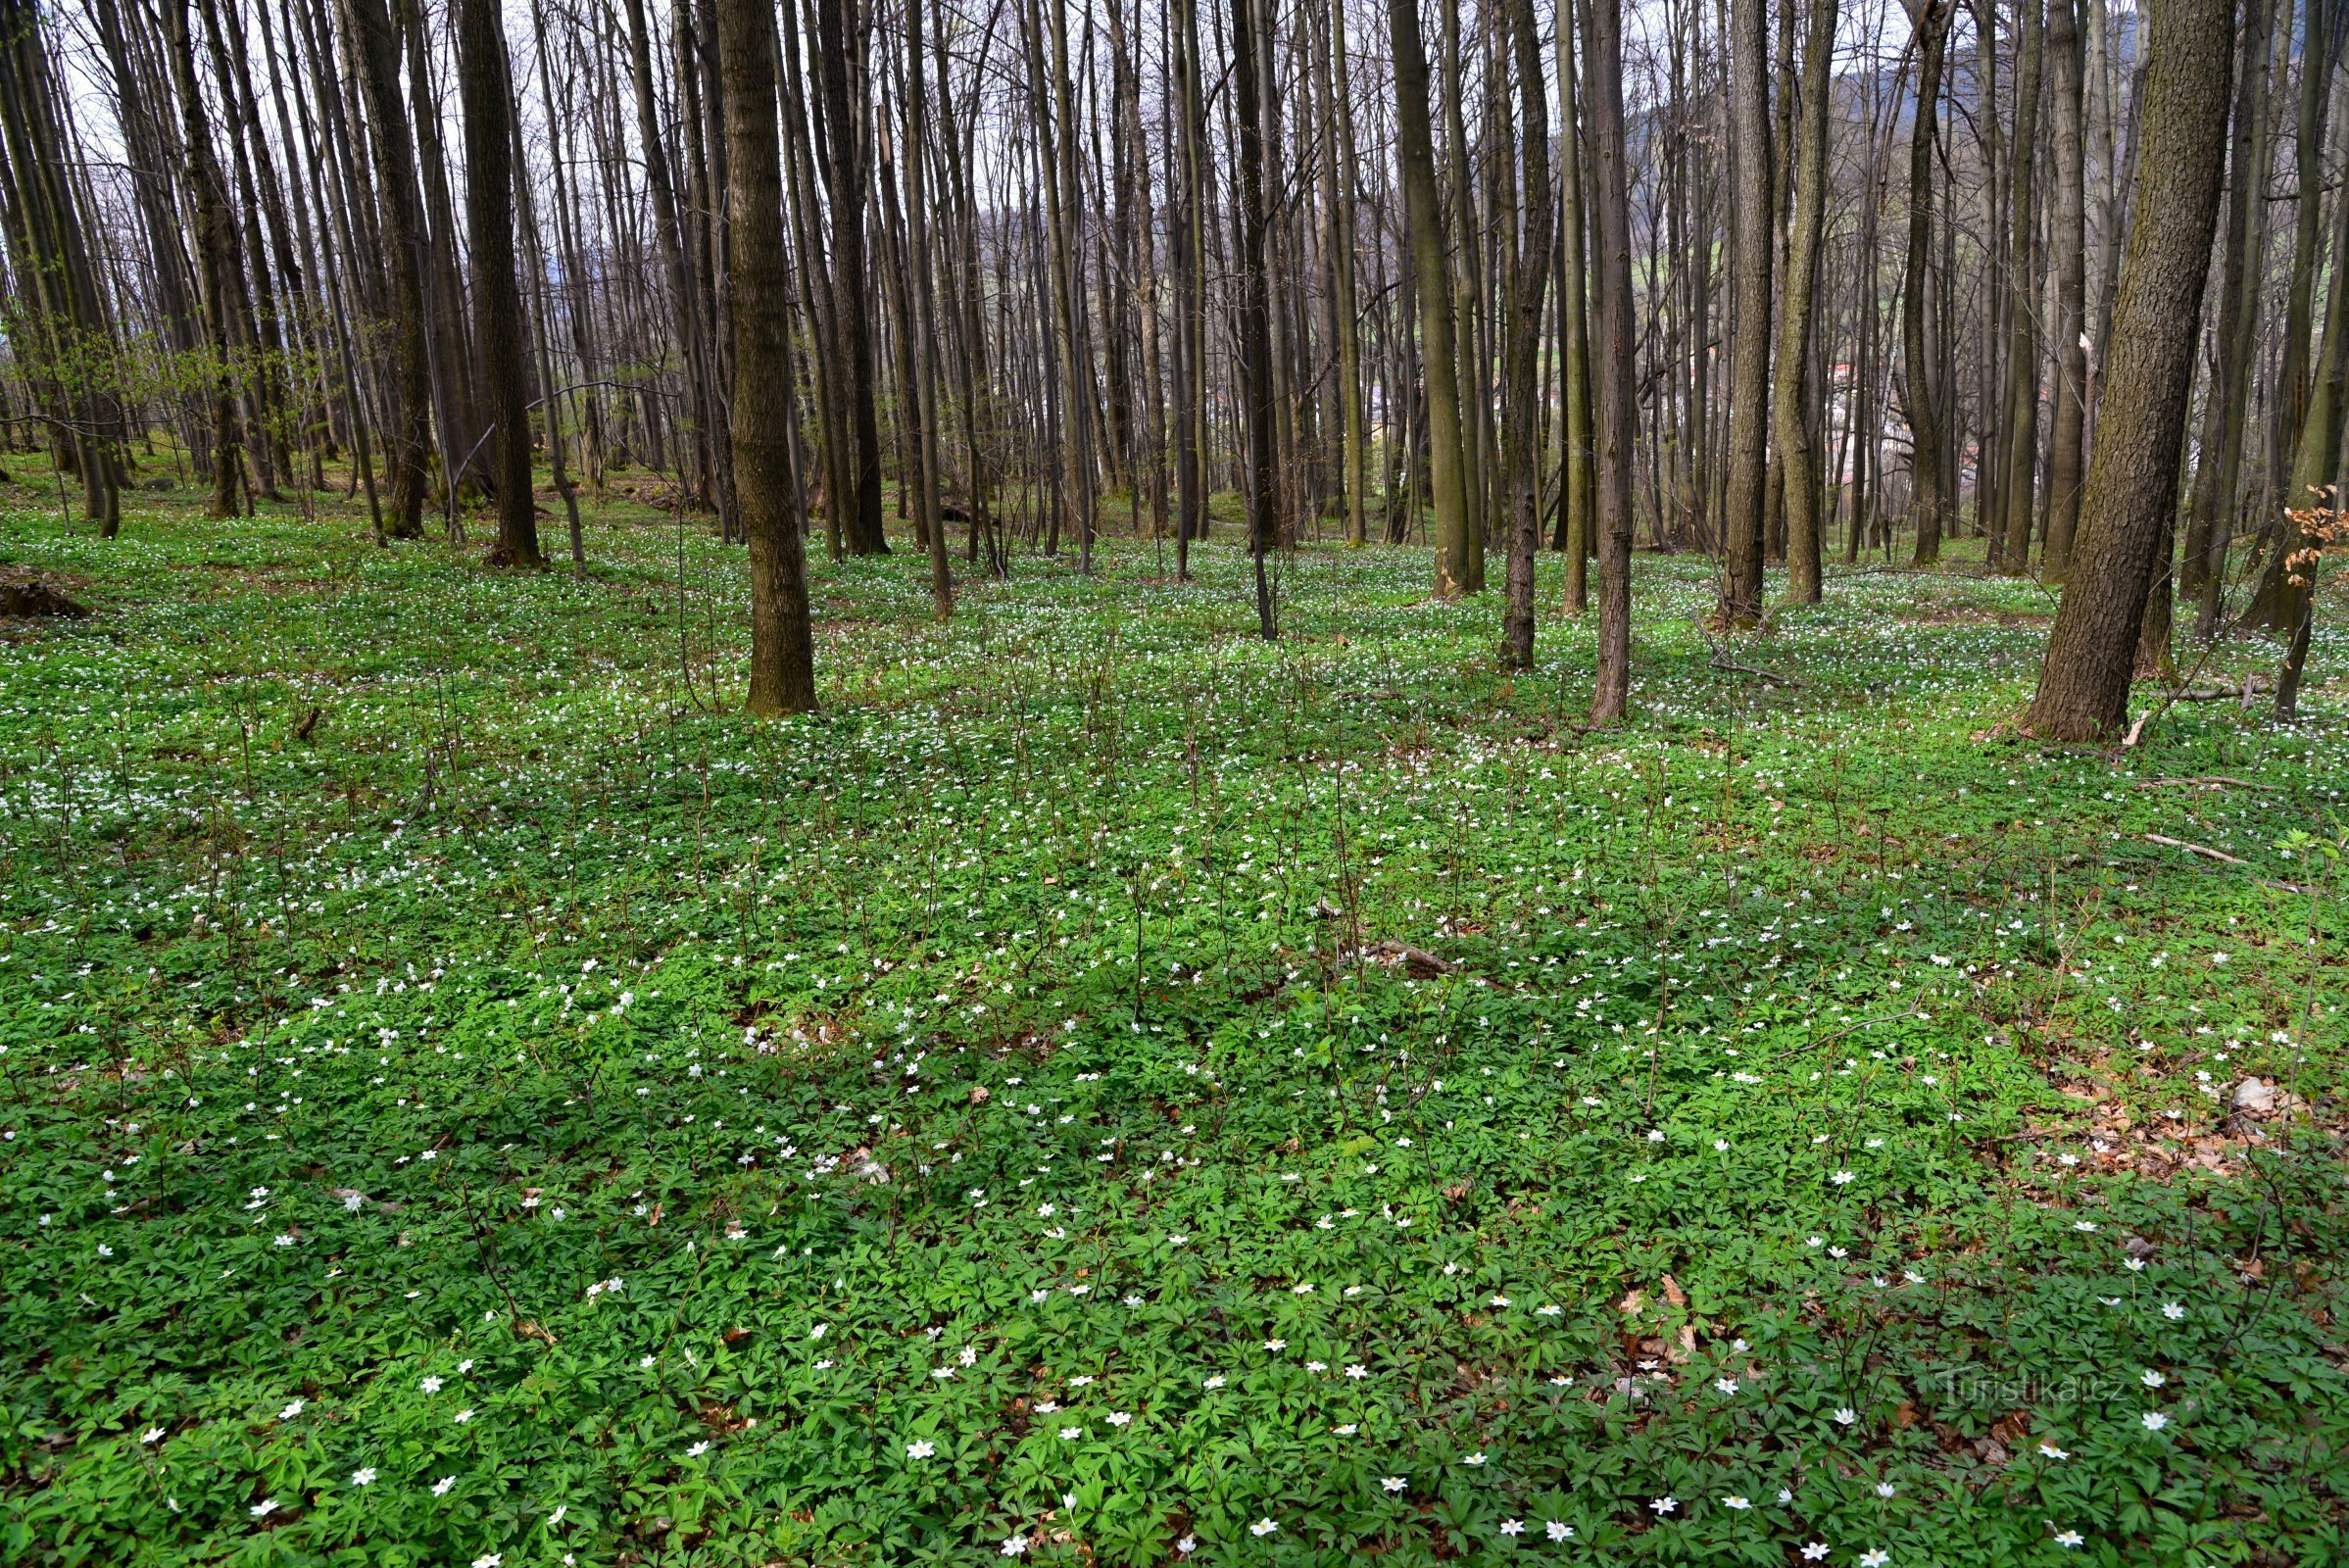 Zlatohorská vrchovina: bos boven Česká Vsí met een lente-aspect